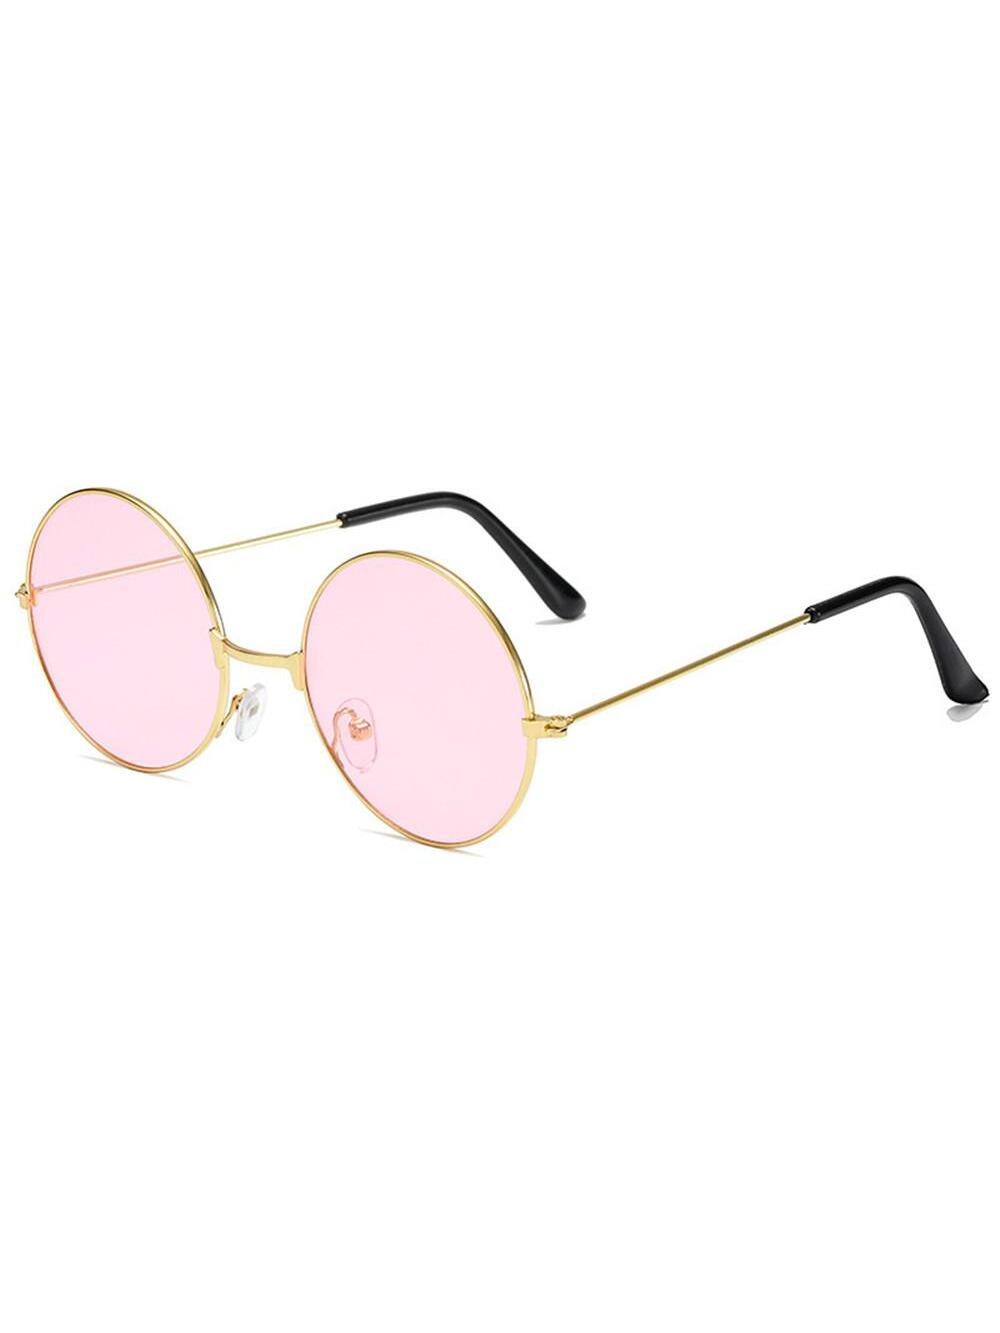 Ретро круглые солнцезащитные очки в стиле хиппи, розовый